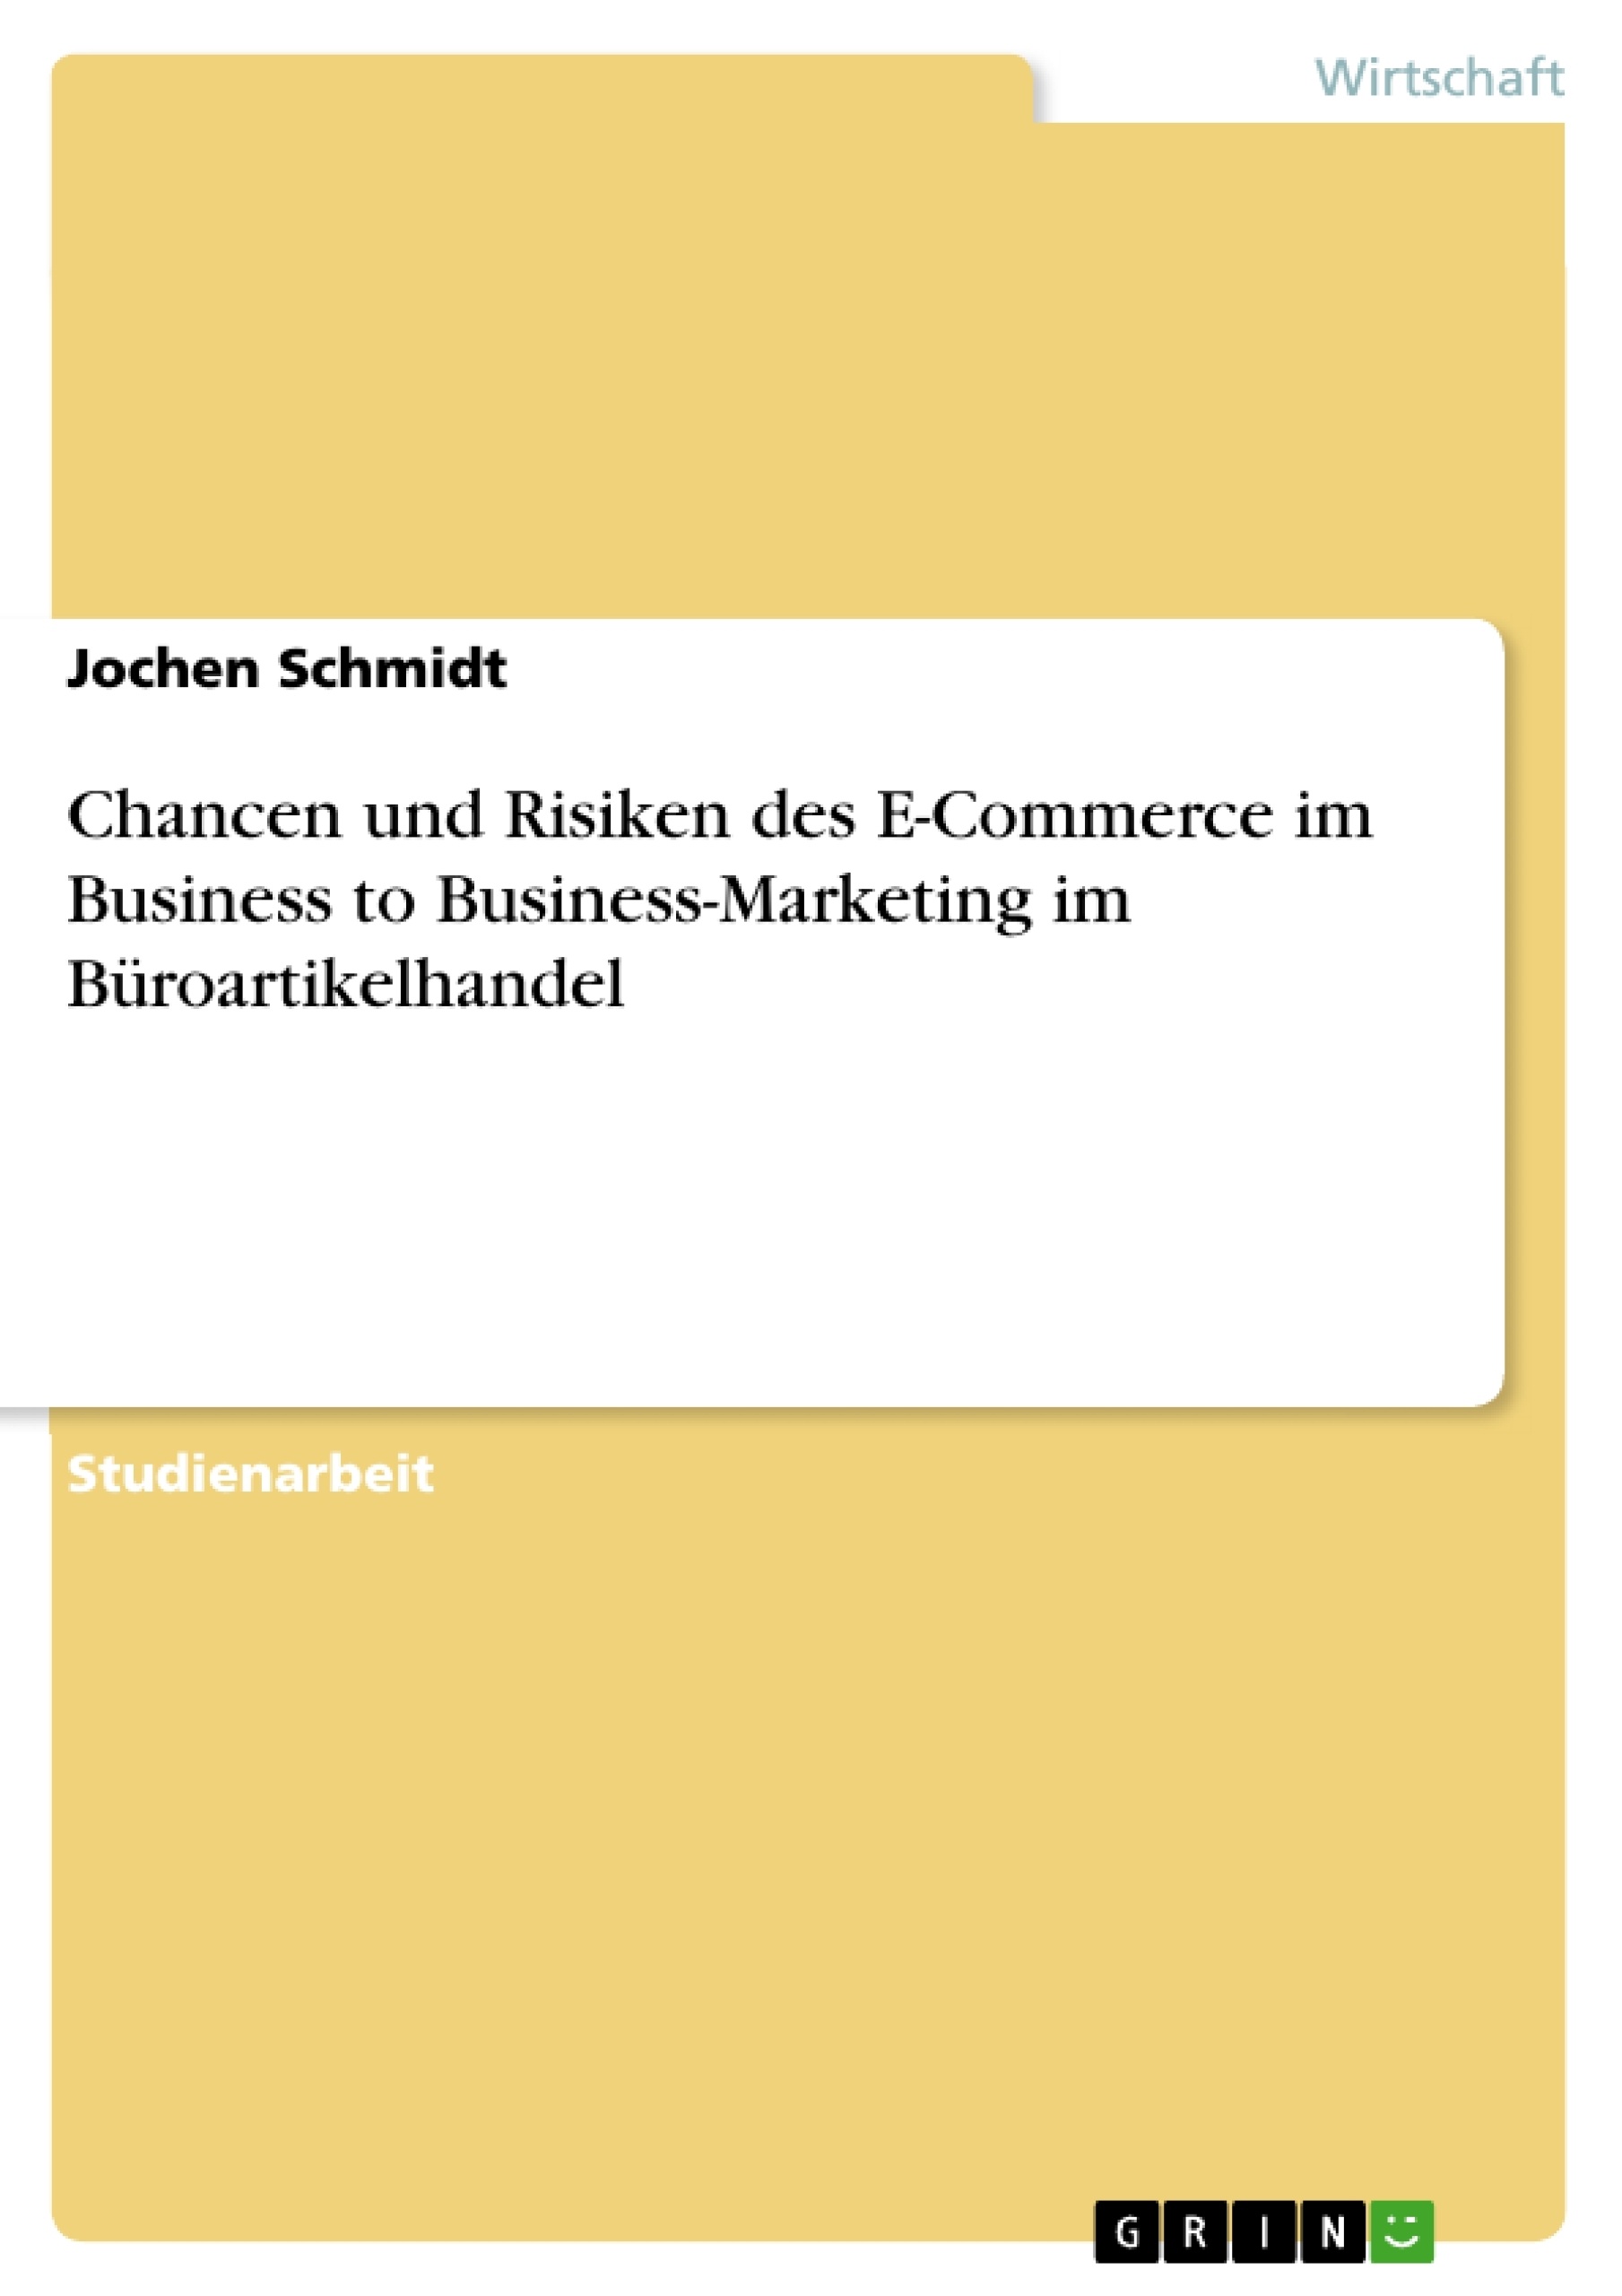 Title: Chancen und Risiken des E-Commerce im Business to Business-Marketing im Büroartikelhandel